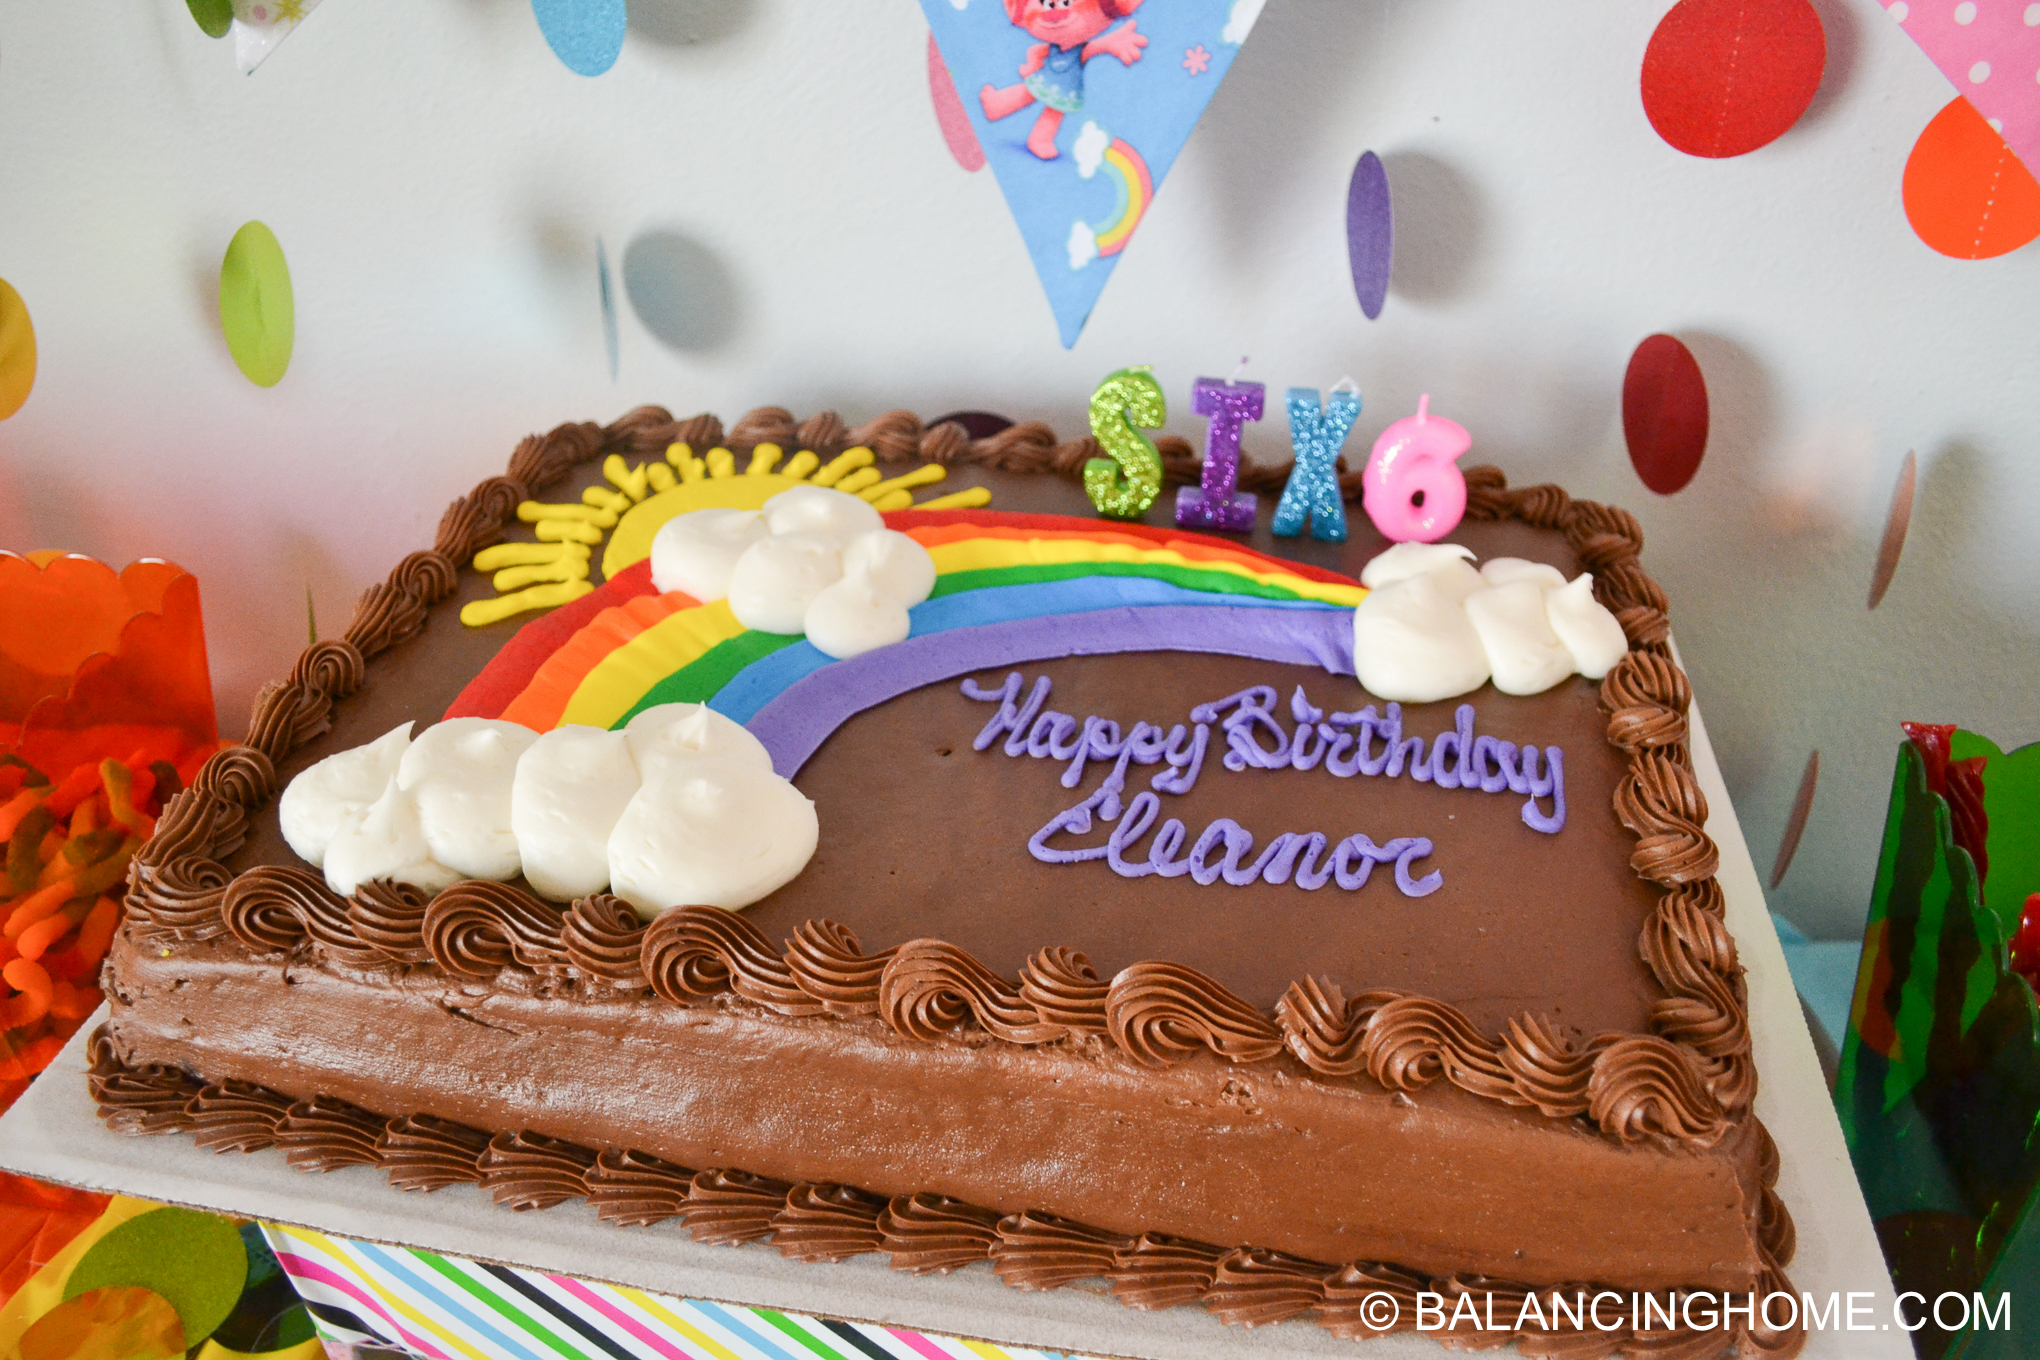 Trolls birthday cake for a simple Trolls birthday party